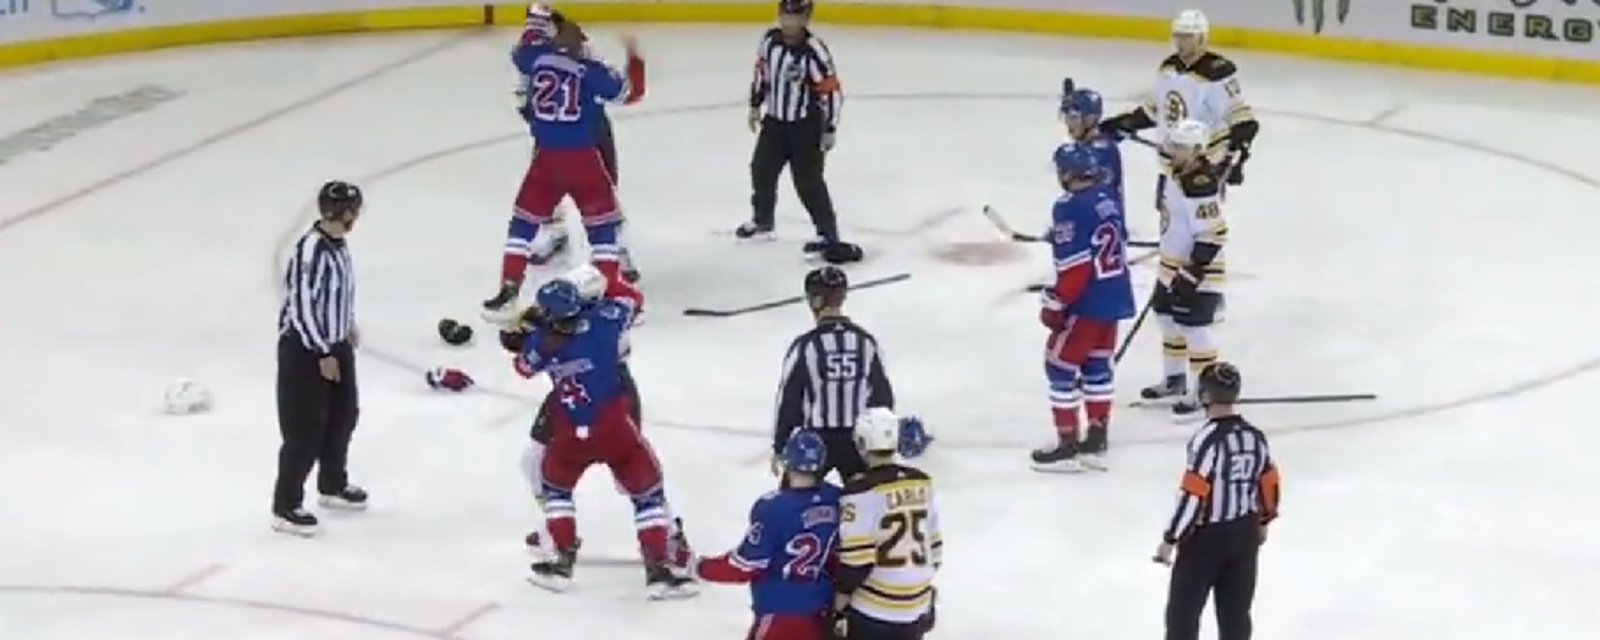 Deux violents combats éclatent en même temps dans le match entre les Bruins et les Rangers